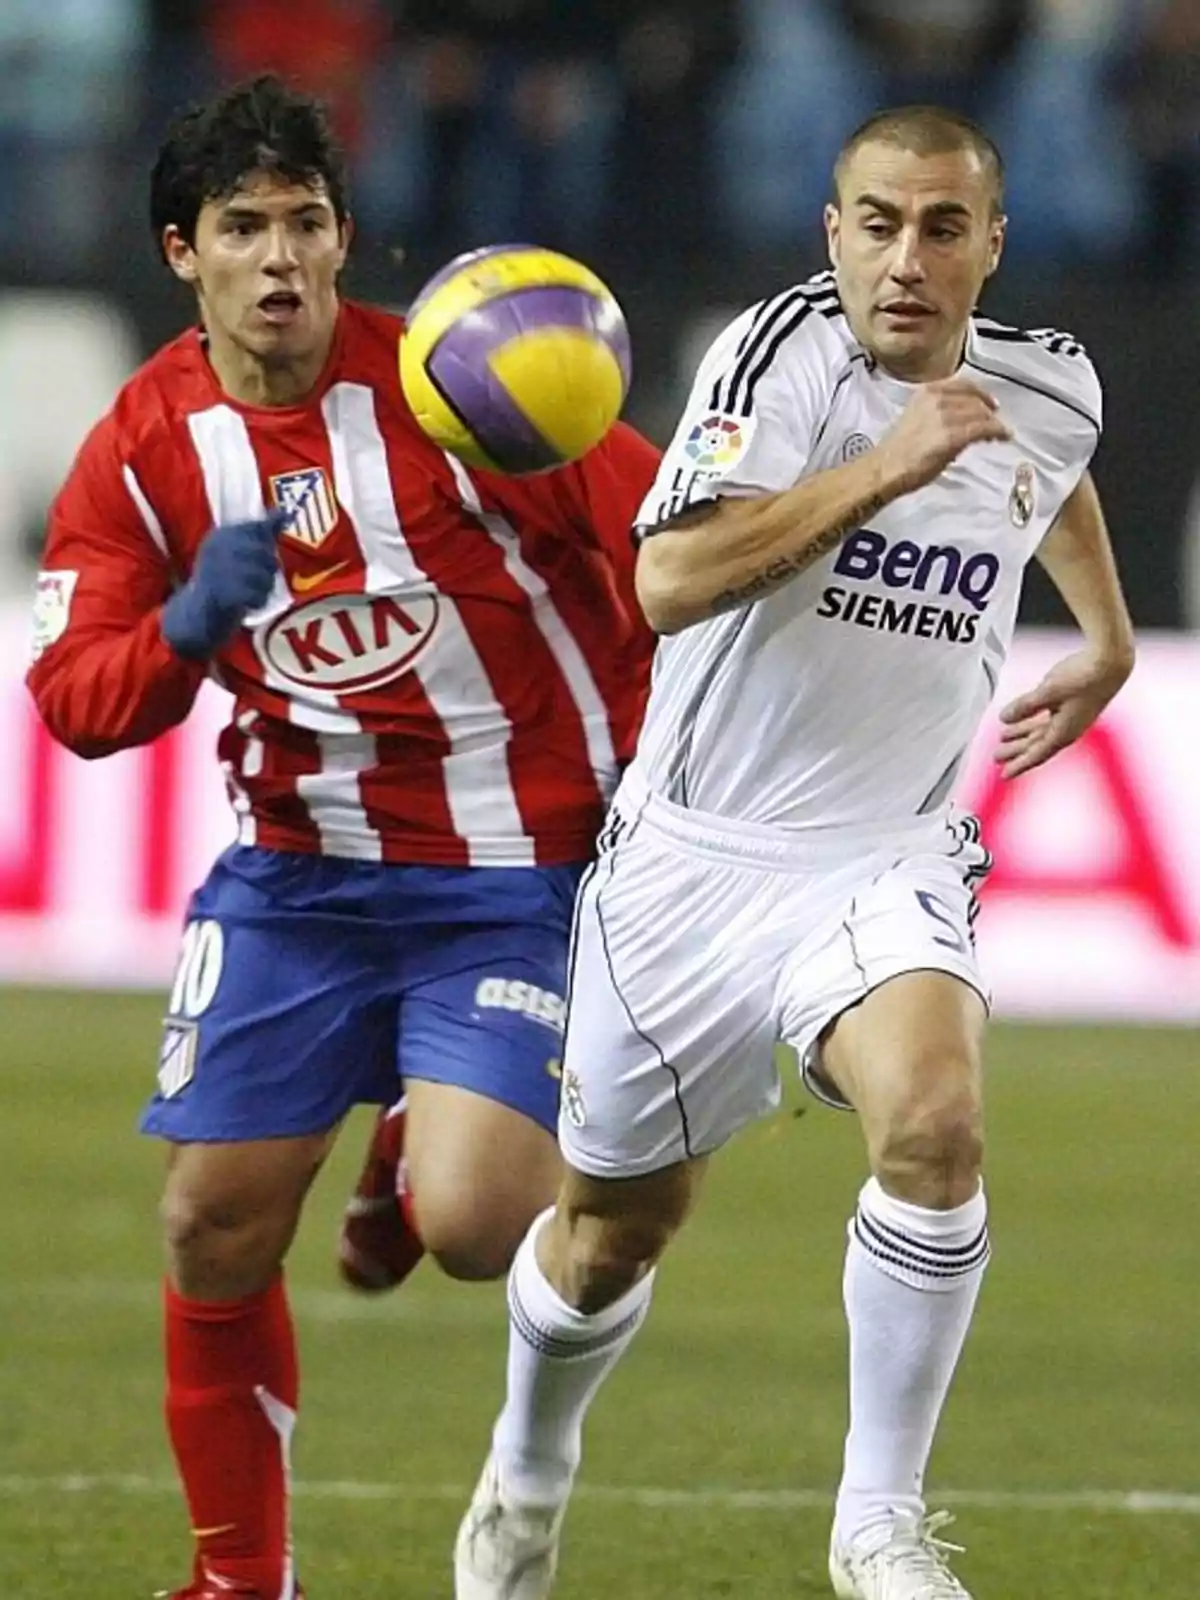 Dos jugadores de fútbol compiten por el balón durante un partido entre el Atlético de Madrid y el Real Madrid.